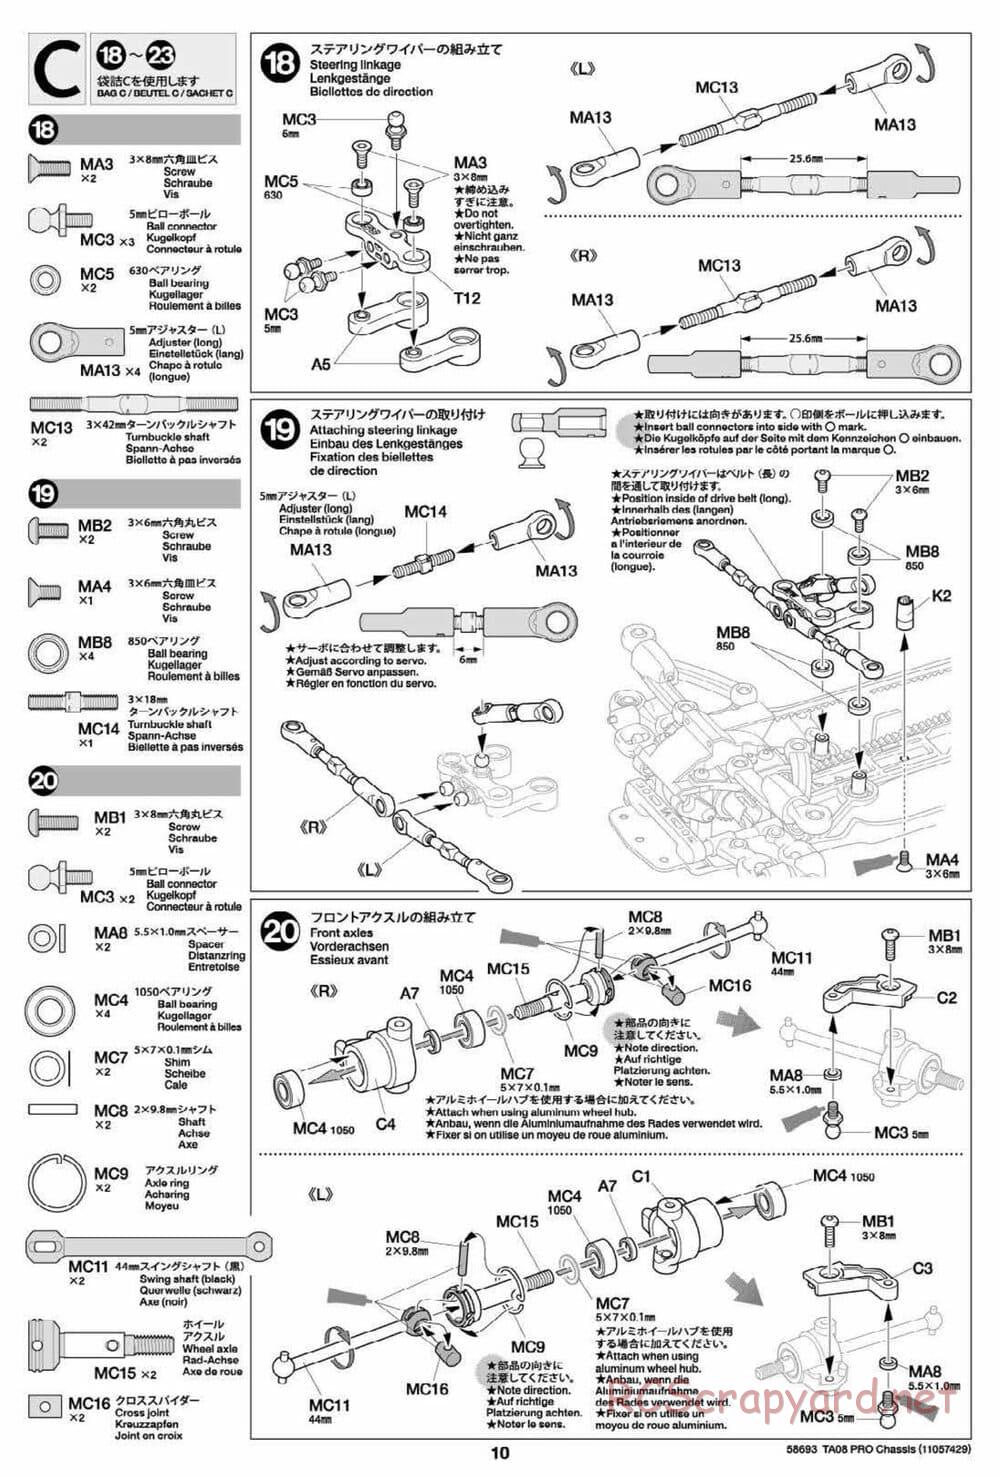 Tamiya - TA08 Pro Chassis - Manual - Page 10